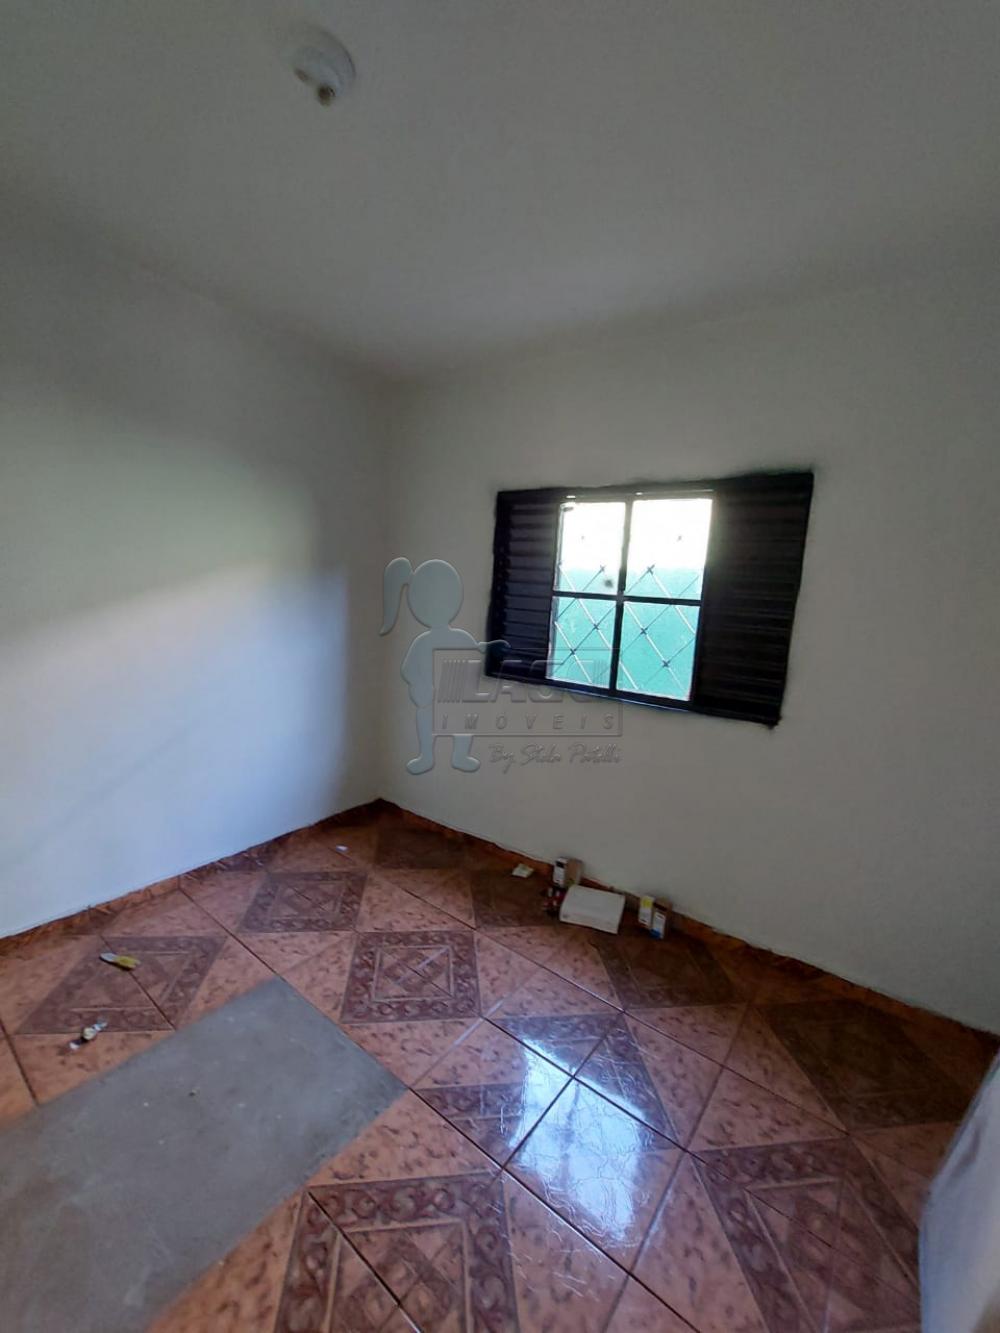 Comprar Casas / Padrão em Ribeirão Preto R$ 210.000,00 - Foto 4